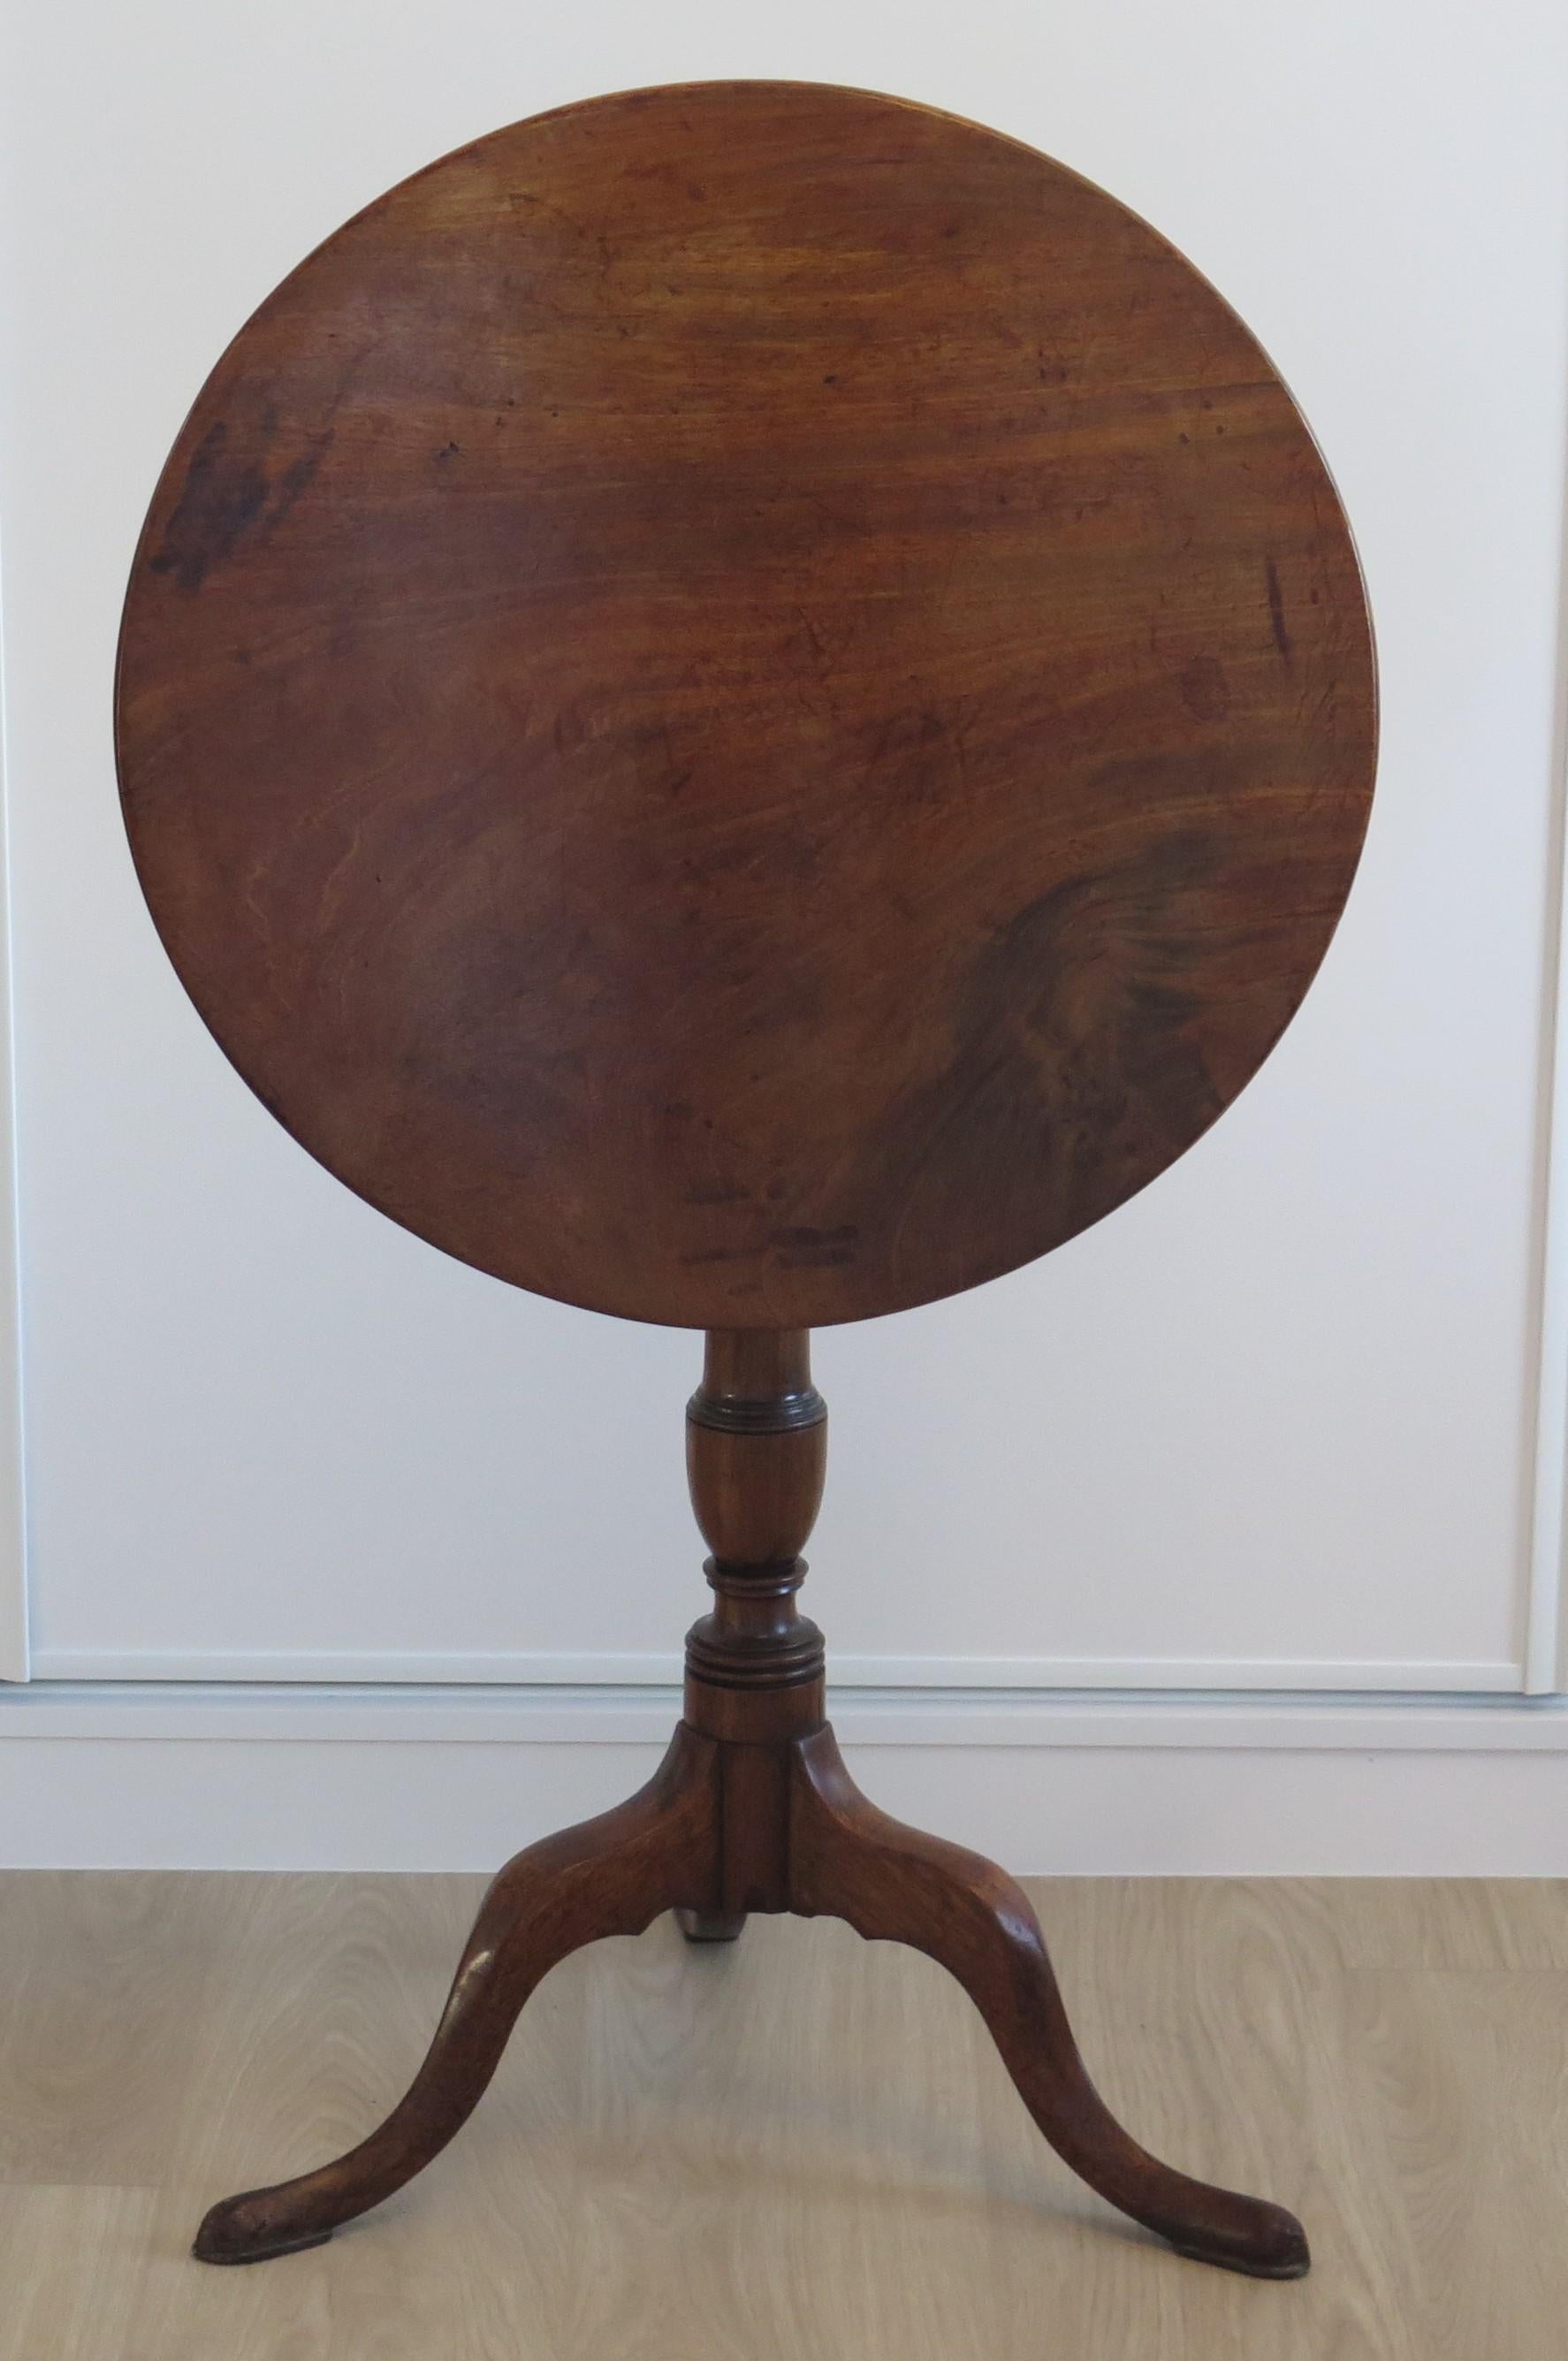 Dies ist ein eleganter und schön proportionierter Tisch aus massivem Hartholz, ein Dreibein-Tisch oder ein Weintisch mit einer kippbaren Platte und stammt aus der mittleren georgianischen Chippendale-Periode, um 1760.

Die runde Platte ist aus